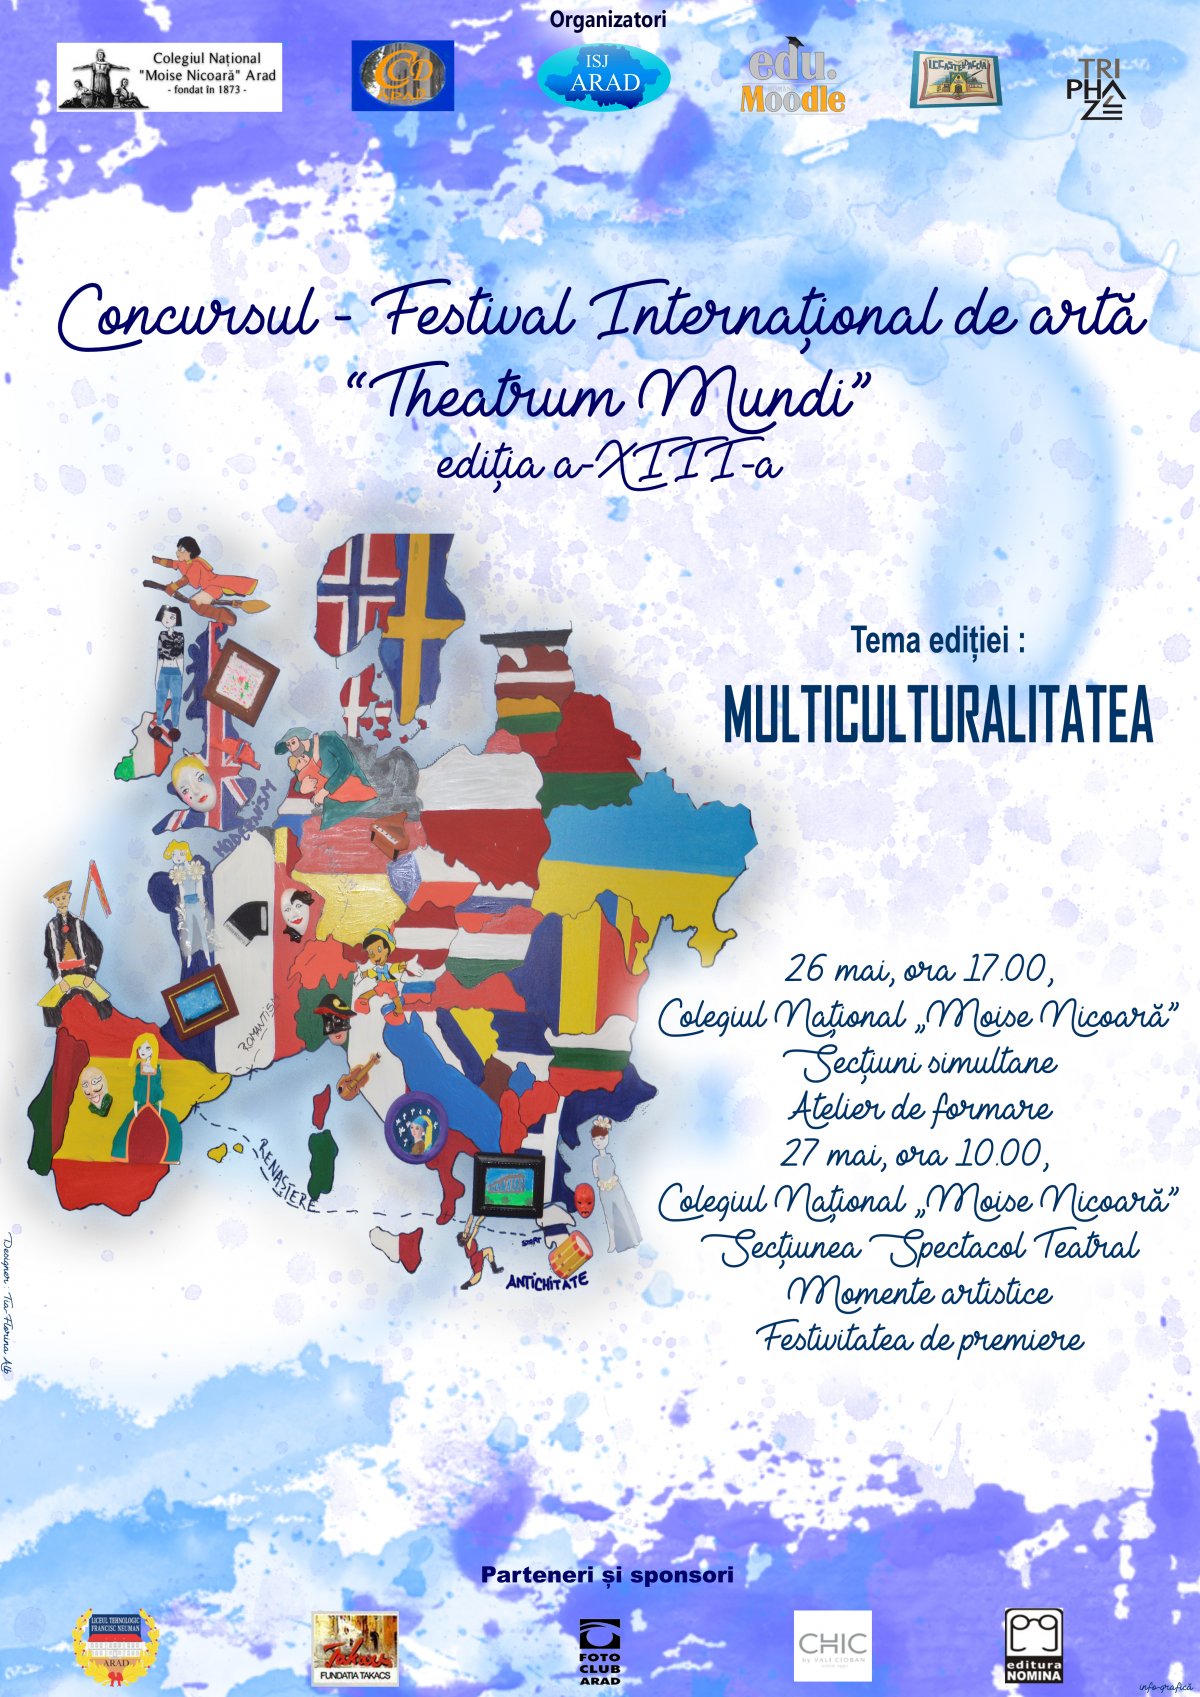 Concursul - festival internațional de artă”Theatrum mundi” la a XIII-a ediție